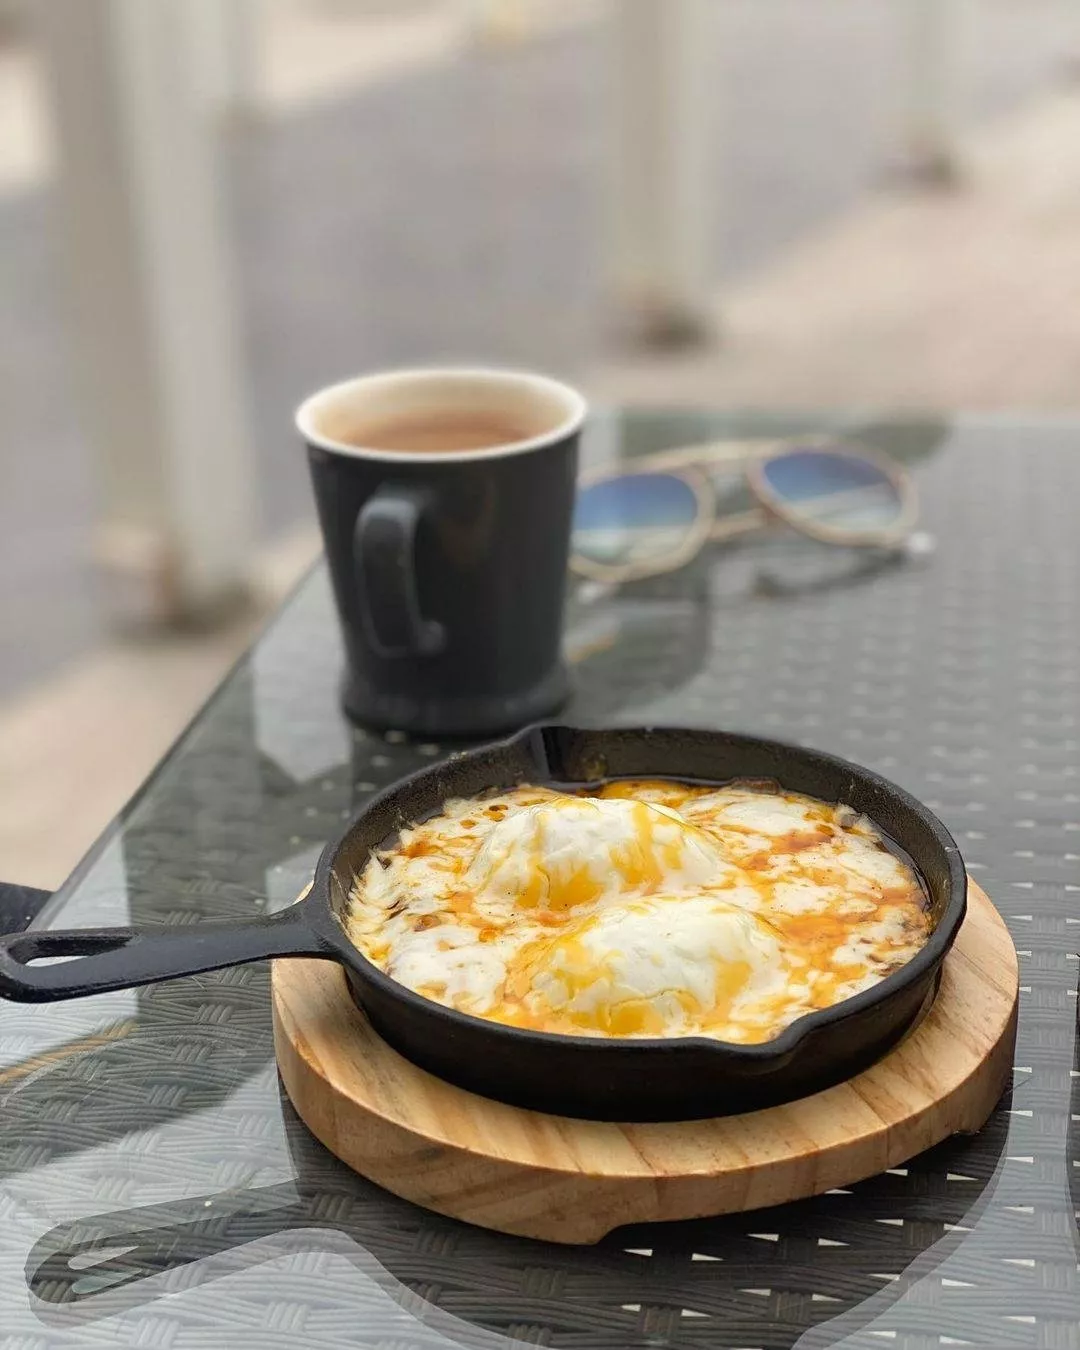 أفضل 8 مطاعم فطور في الرياض تضمن لكِ وجبة مميّزة عند الصباح